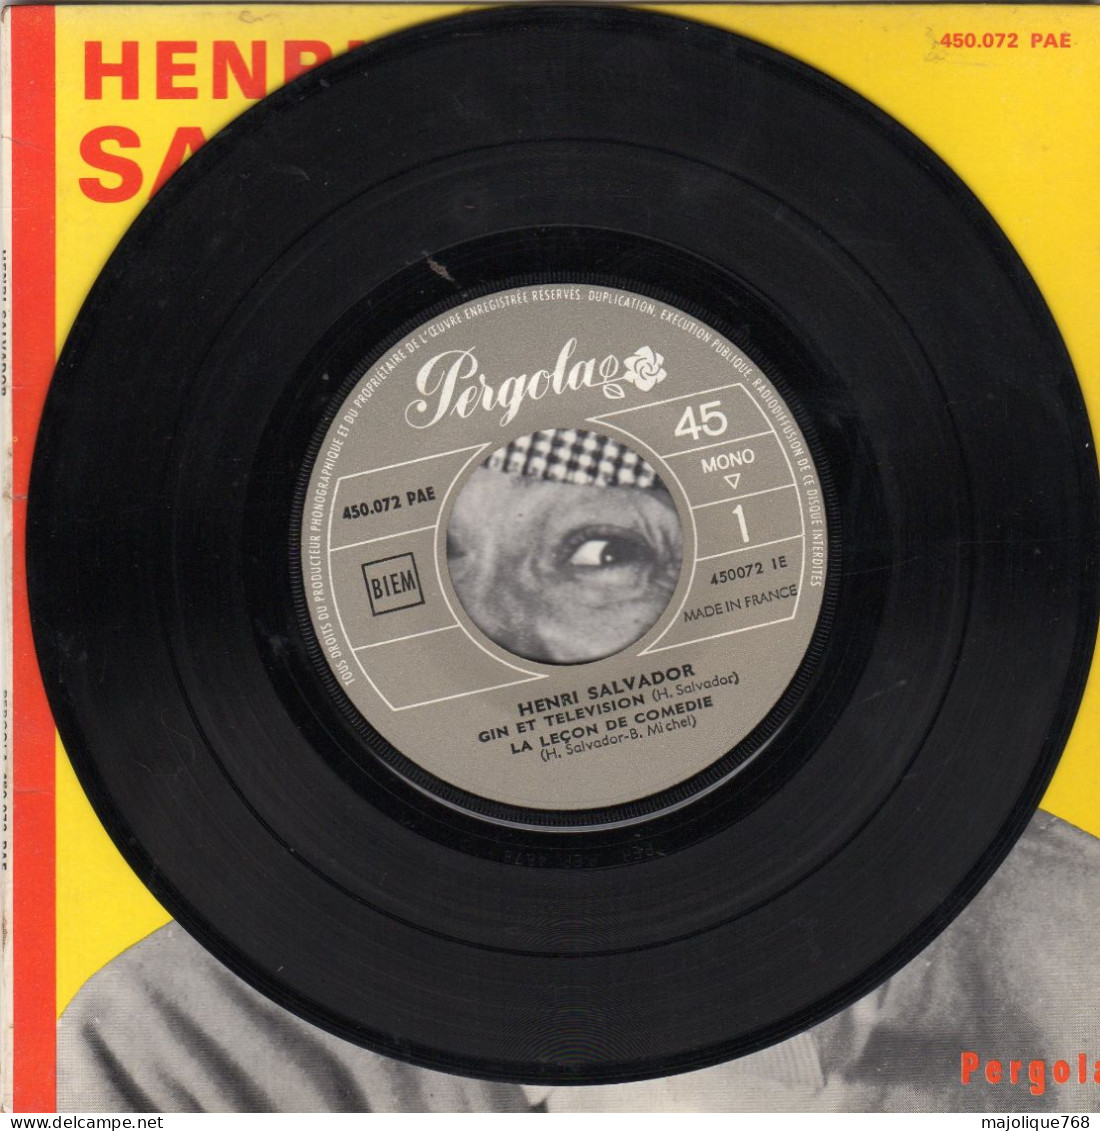 Disque 45T - SP De Henri Salvador - Gin Et Télévision - Pergola 450.072 PAE - France 1964 - Humour, Cabaret